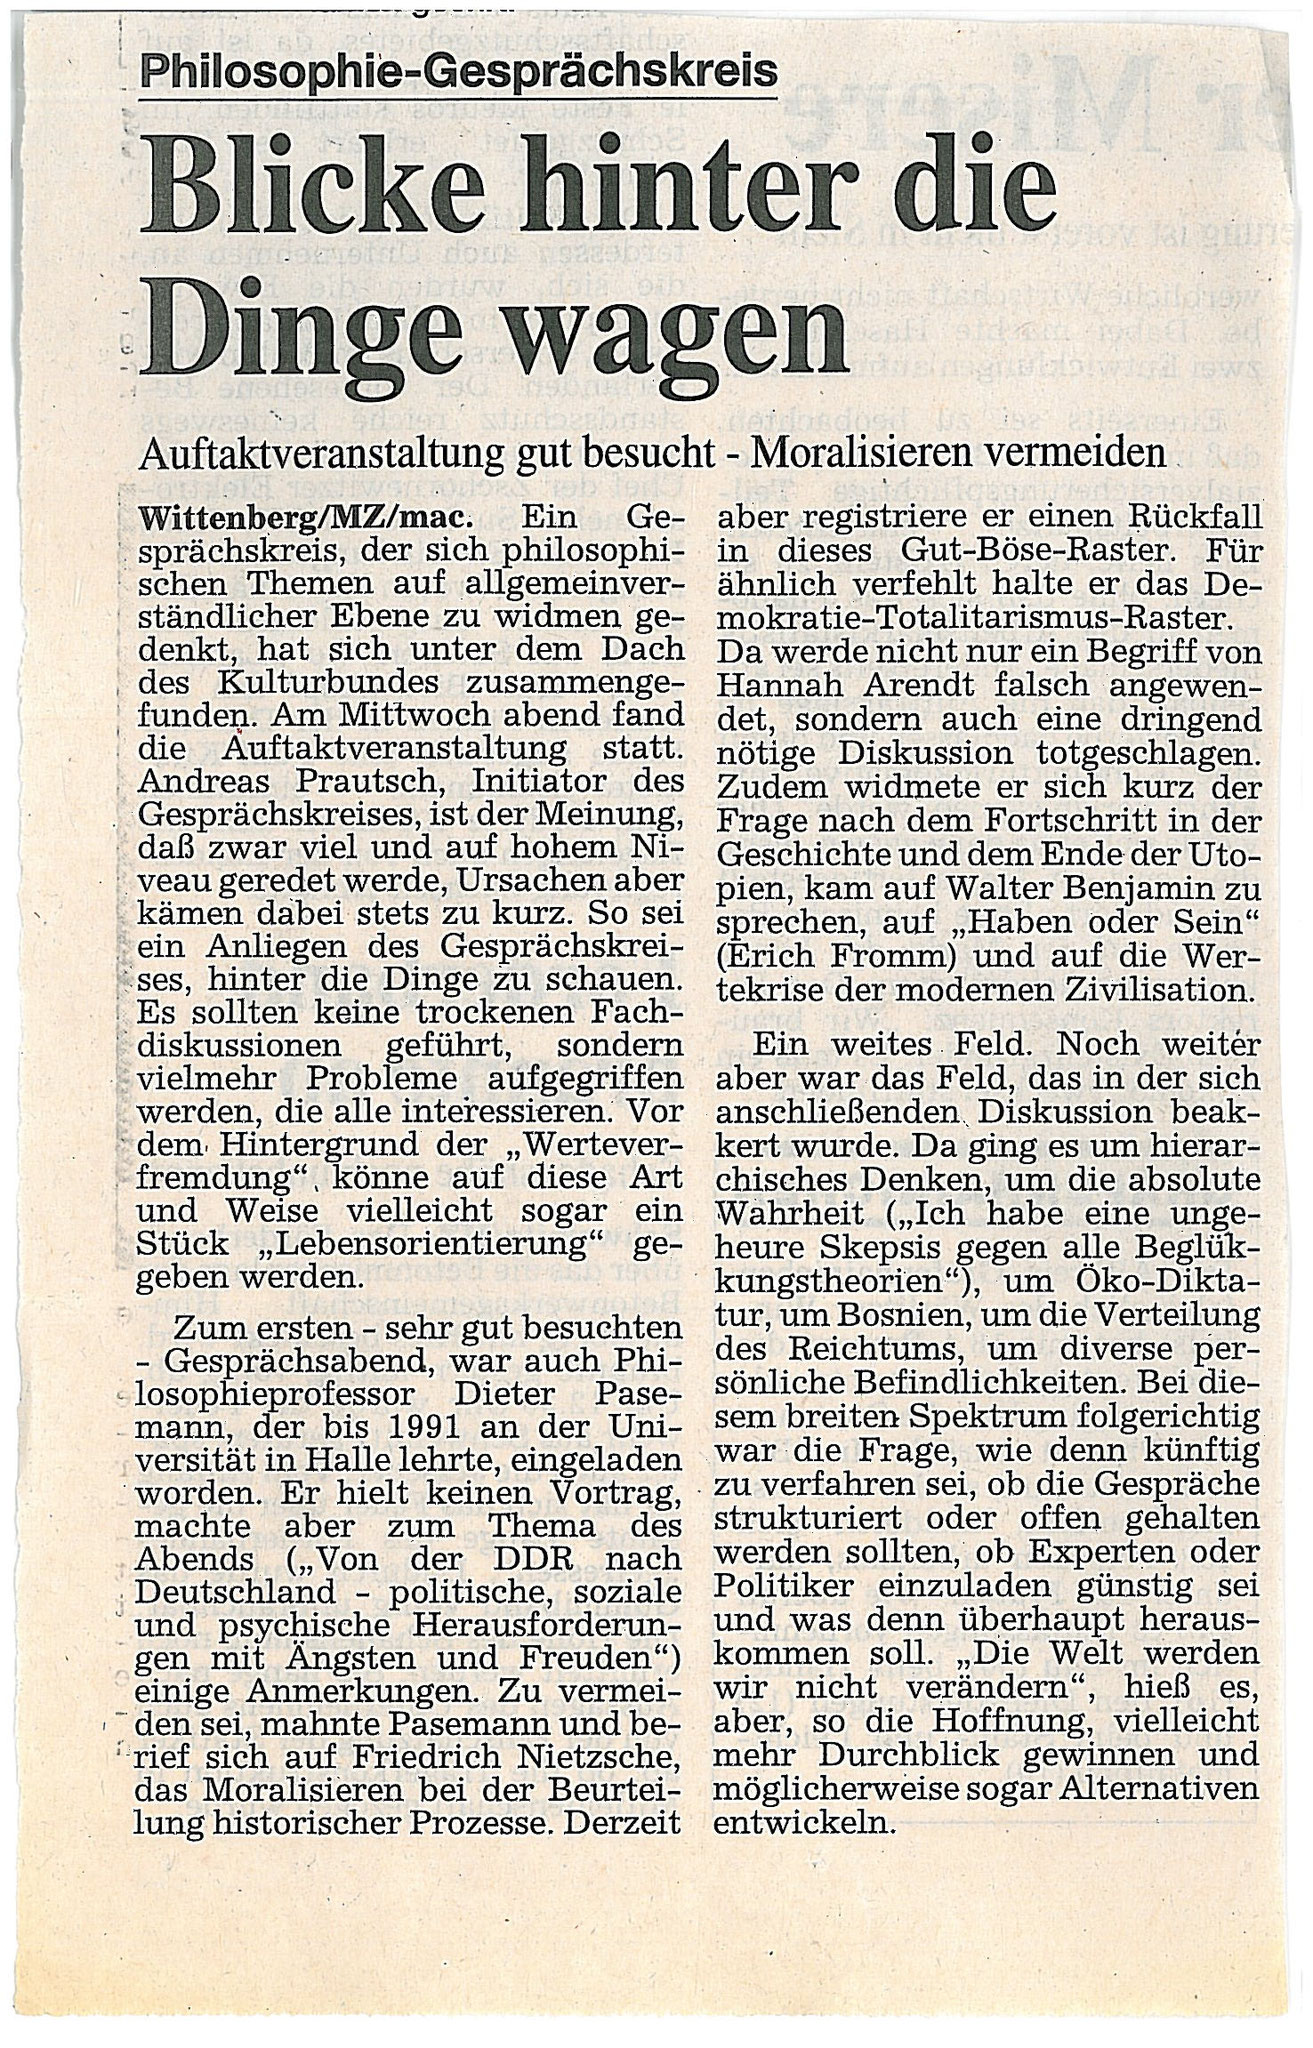 Ankündigung der Gründung des philosophischen Gesprächskreises in Wittenberg - Oktober 1995